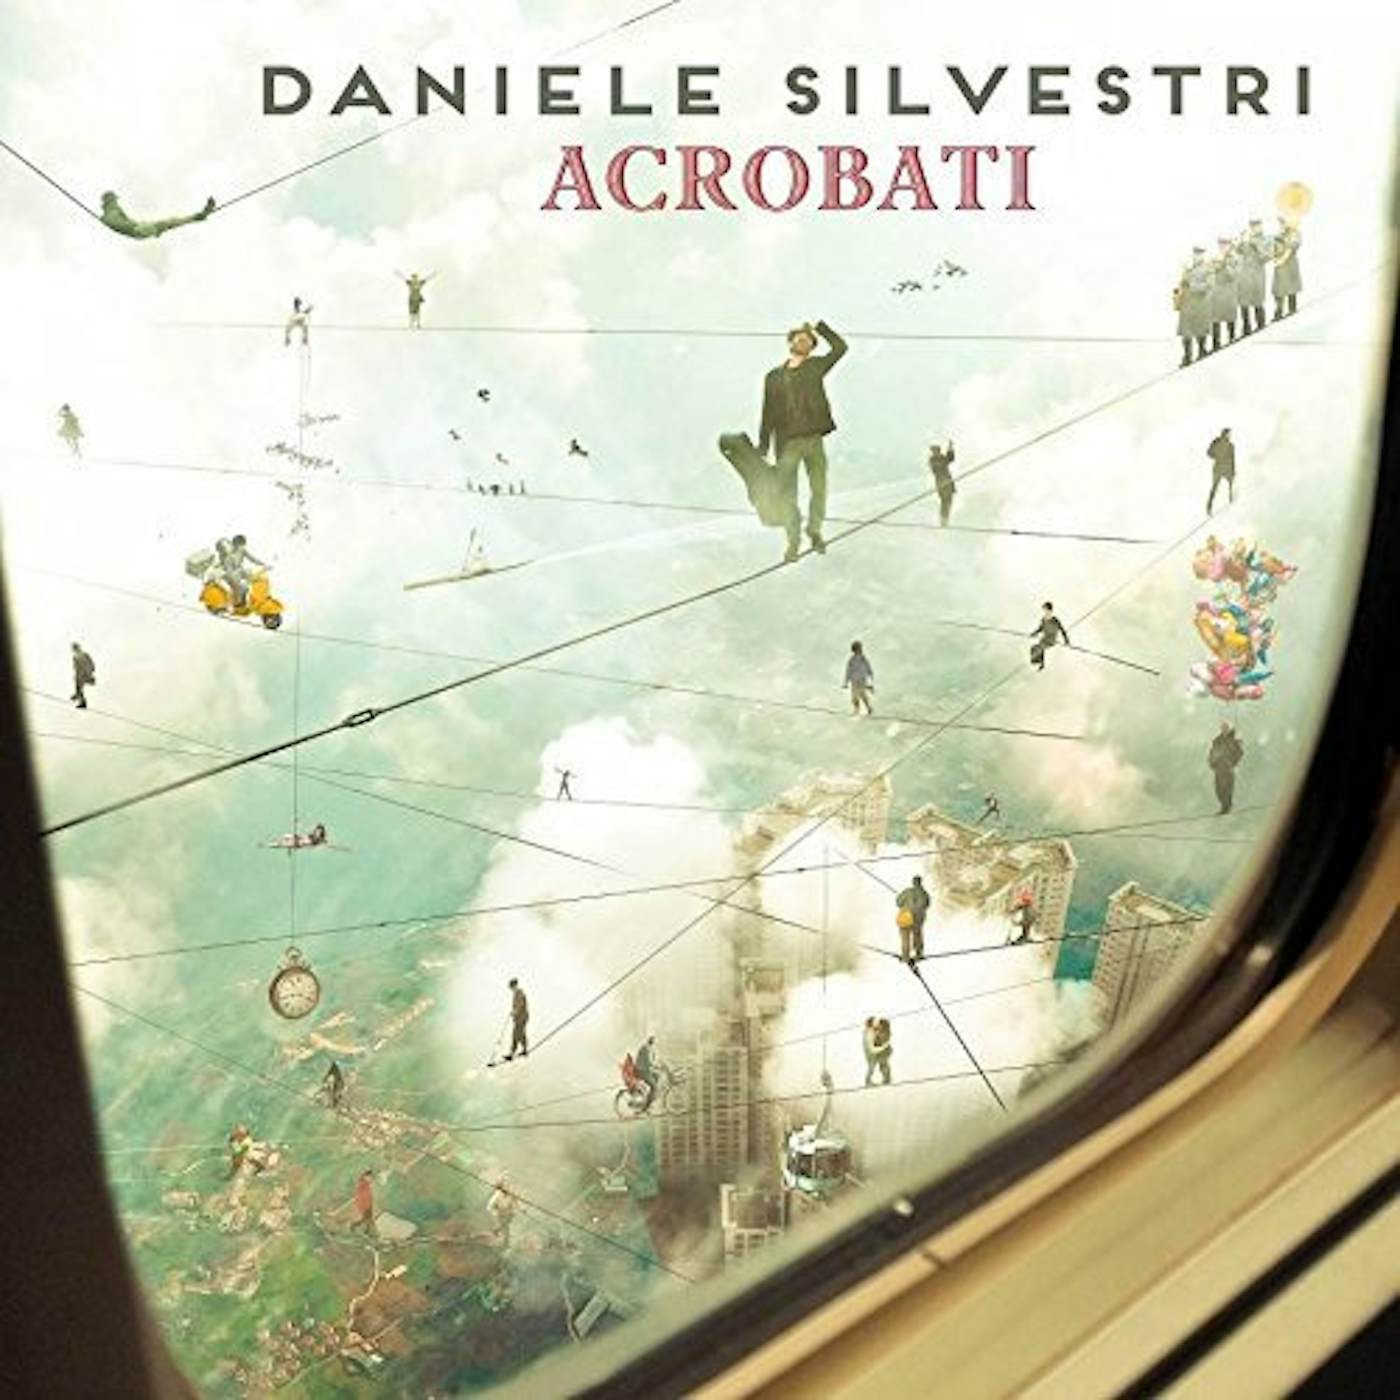 Daniele Silvestri Acrobati Vinyl Record